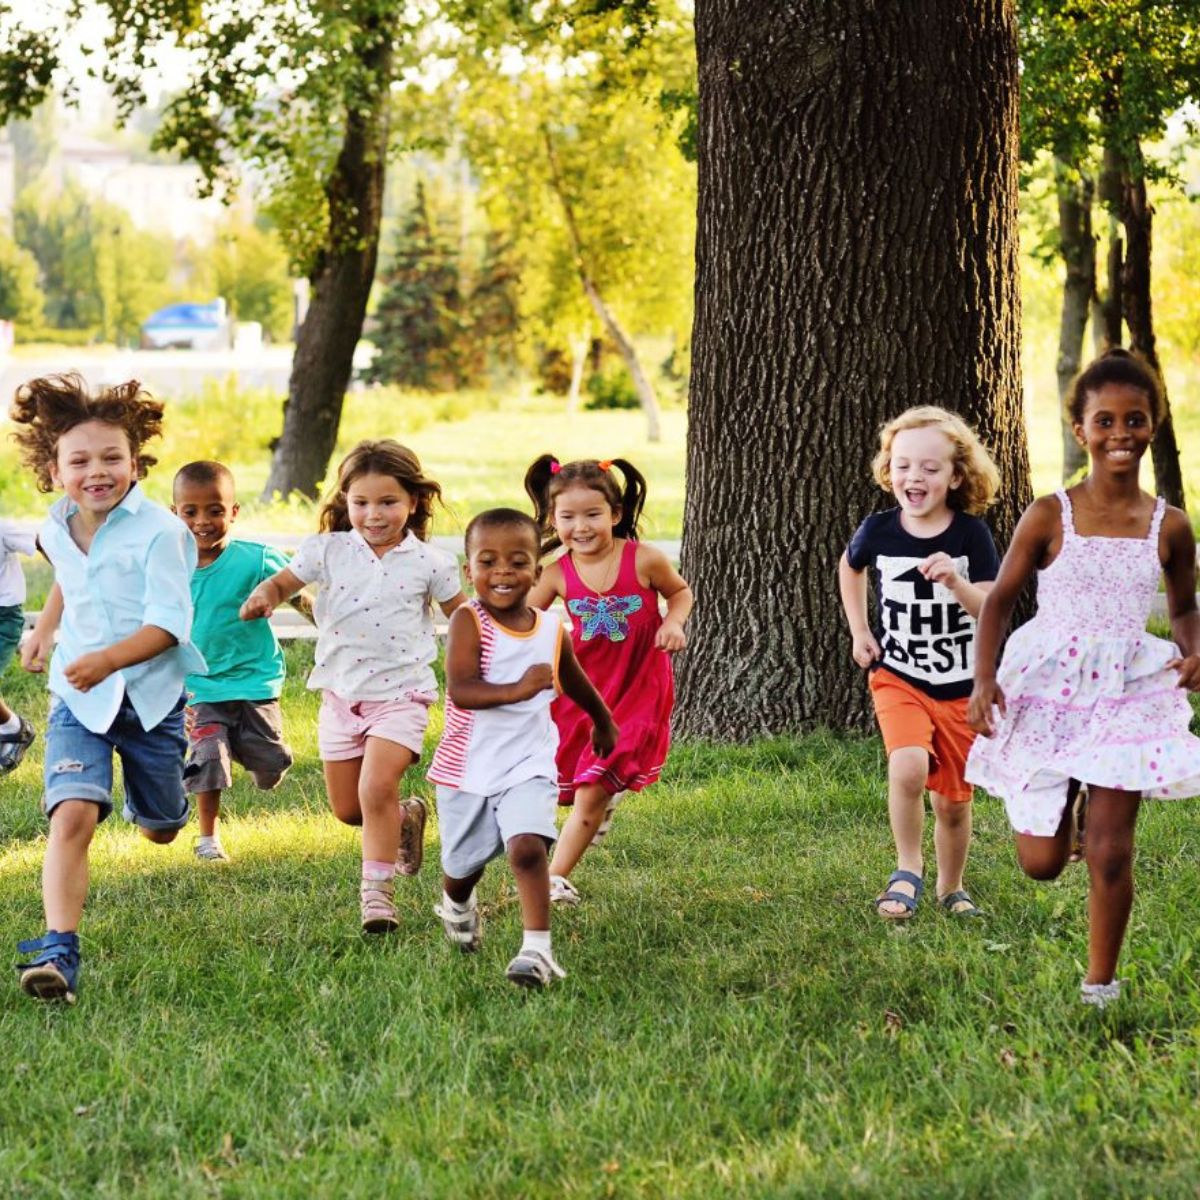 BUnch of kids running in woods.